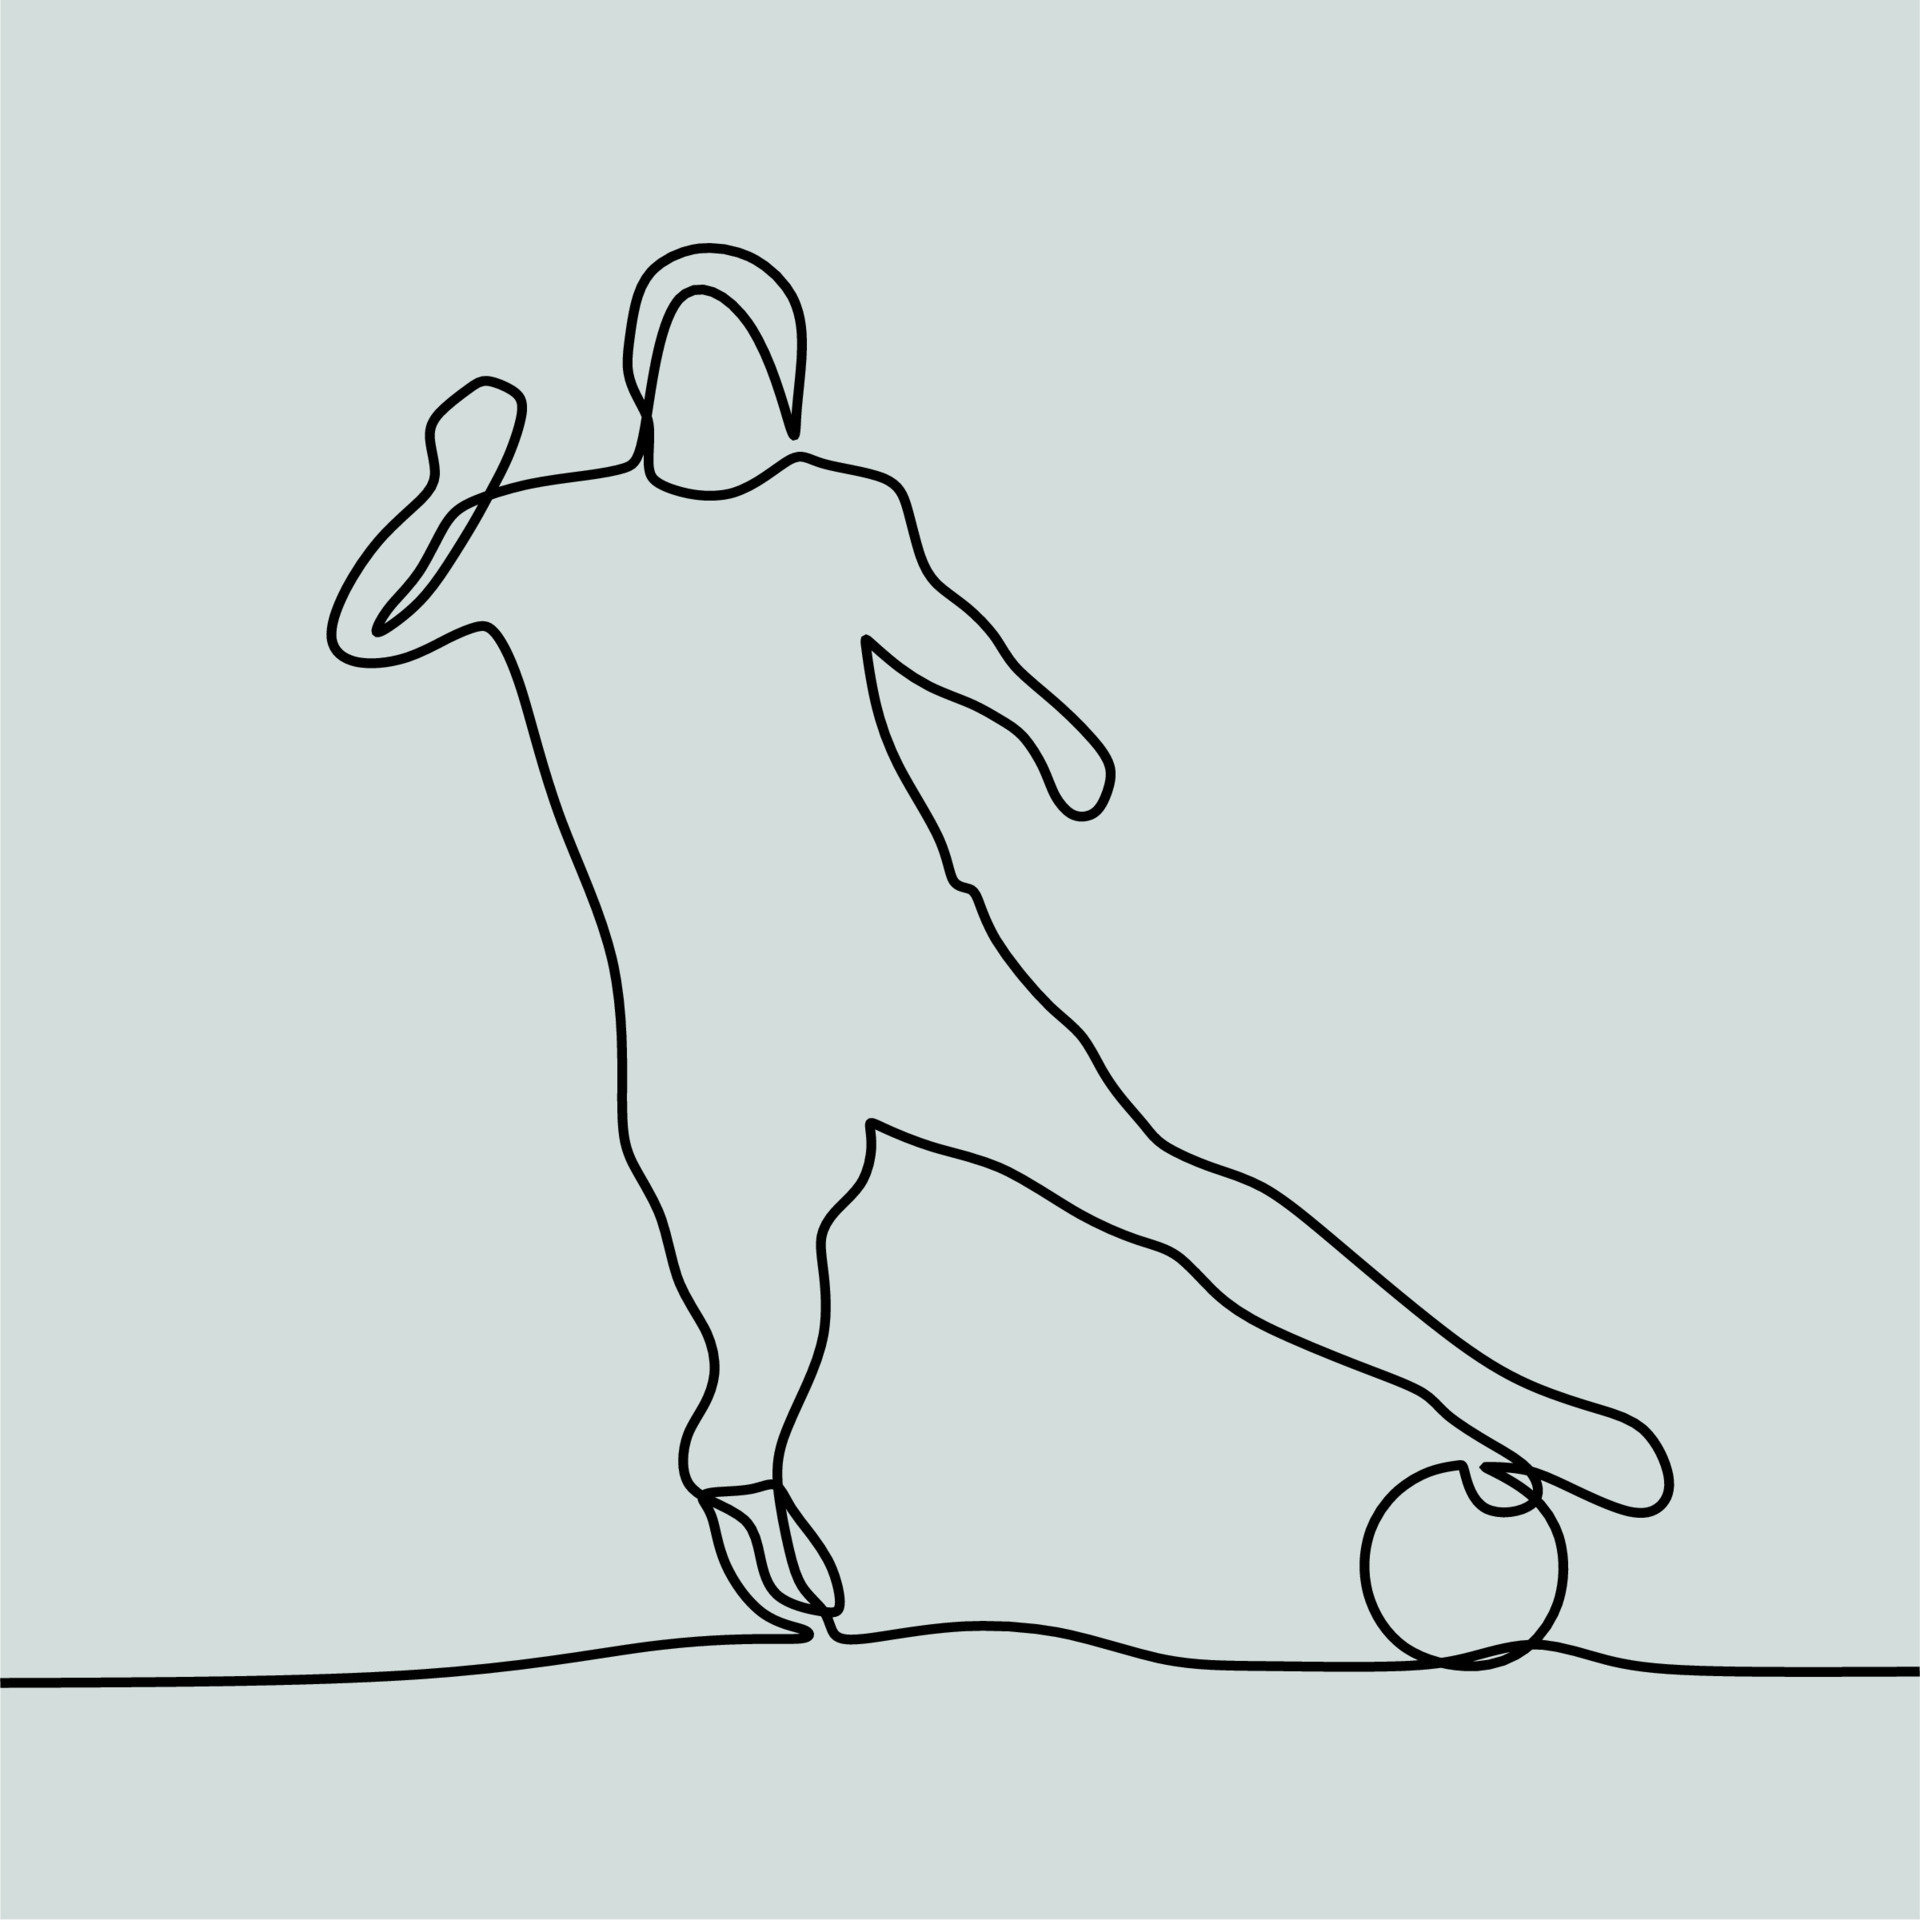 Desenho de linha contínua em pessoas jogando futebol